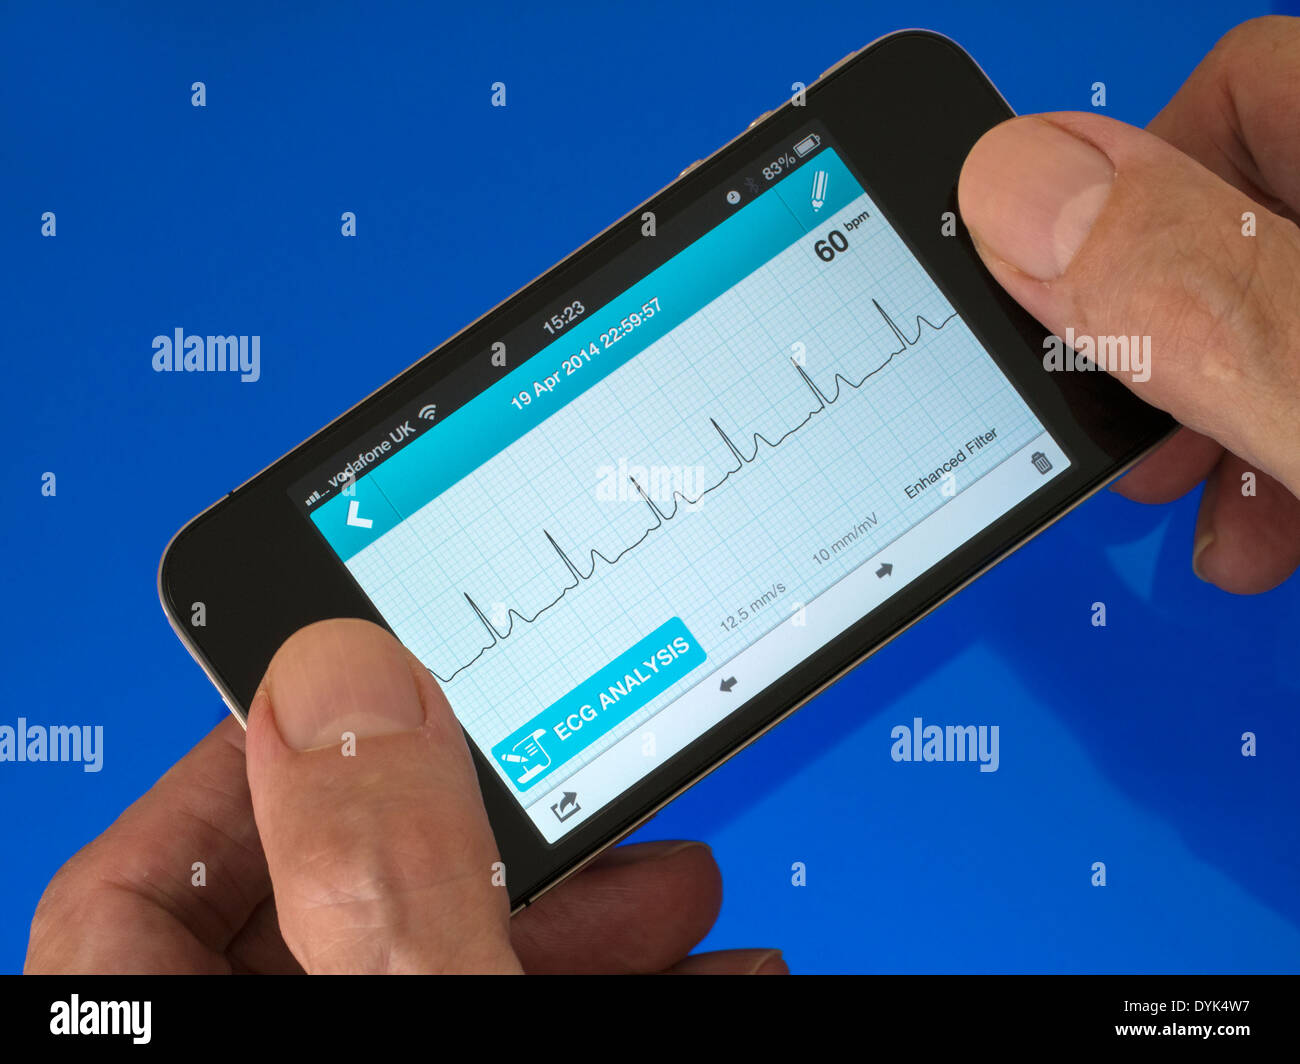 Utente azienda ECG portatile EKG Cardiofrequenzimetro App in esecuzione su iPhone 4 con la traccia che mostra sinusale normale ritmo cardiaco traccia. Foto Stock